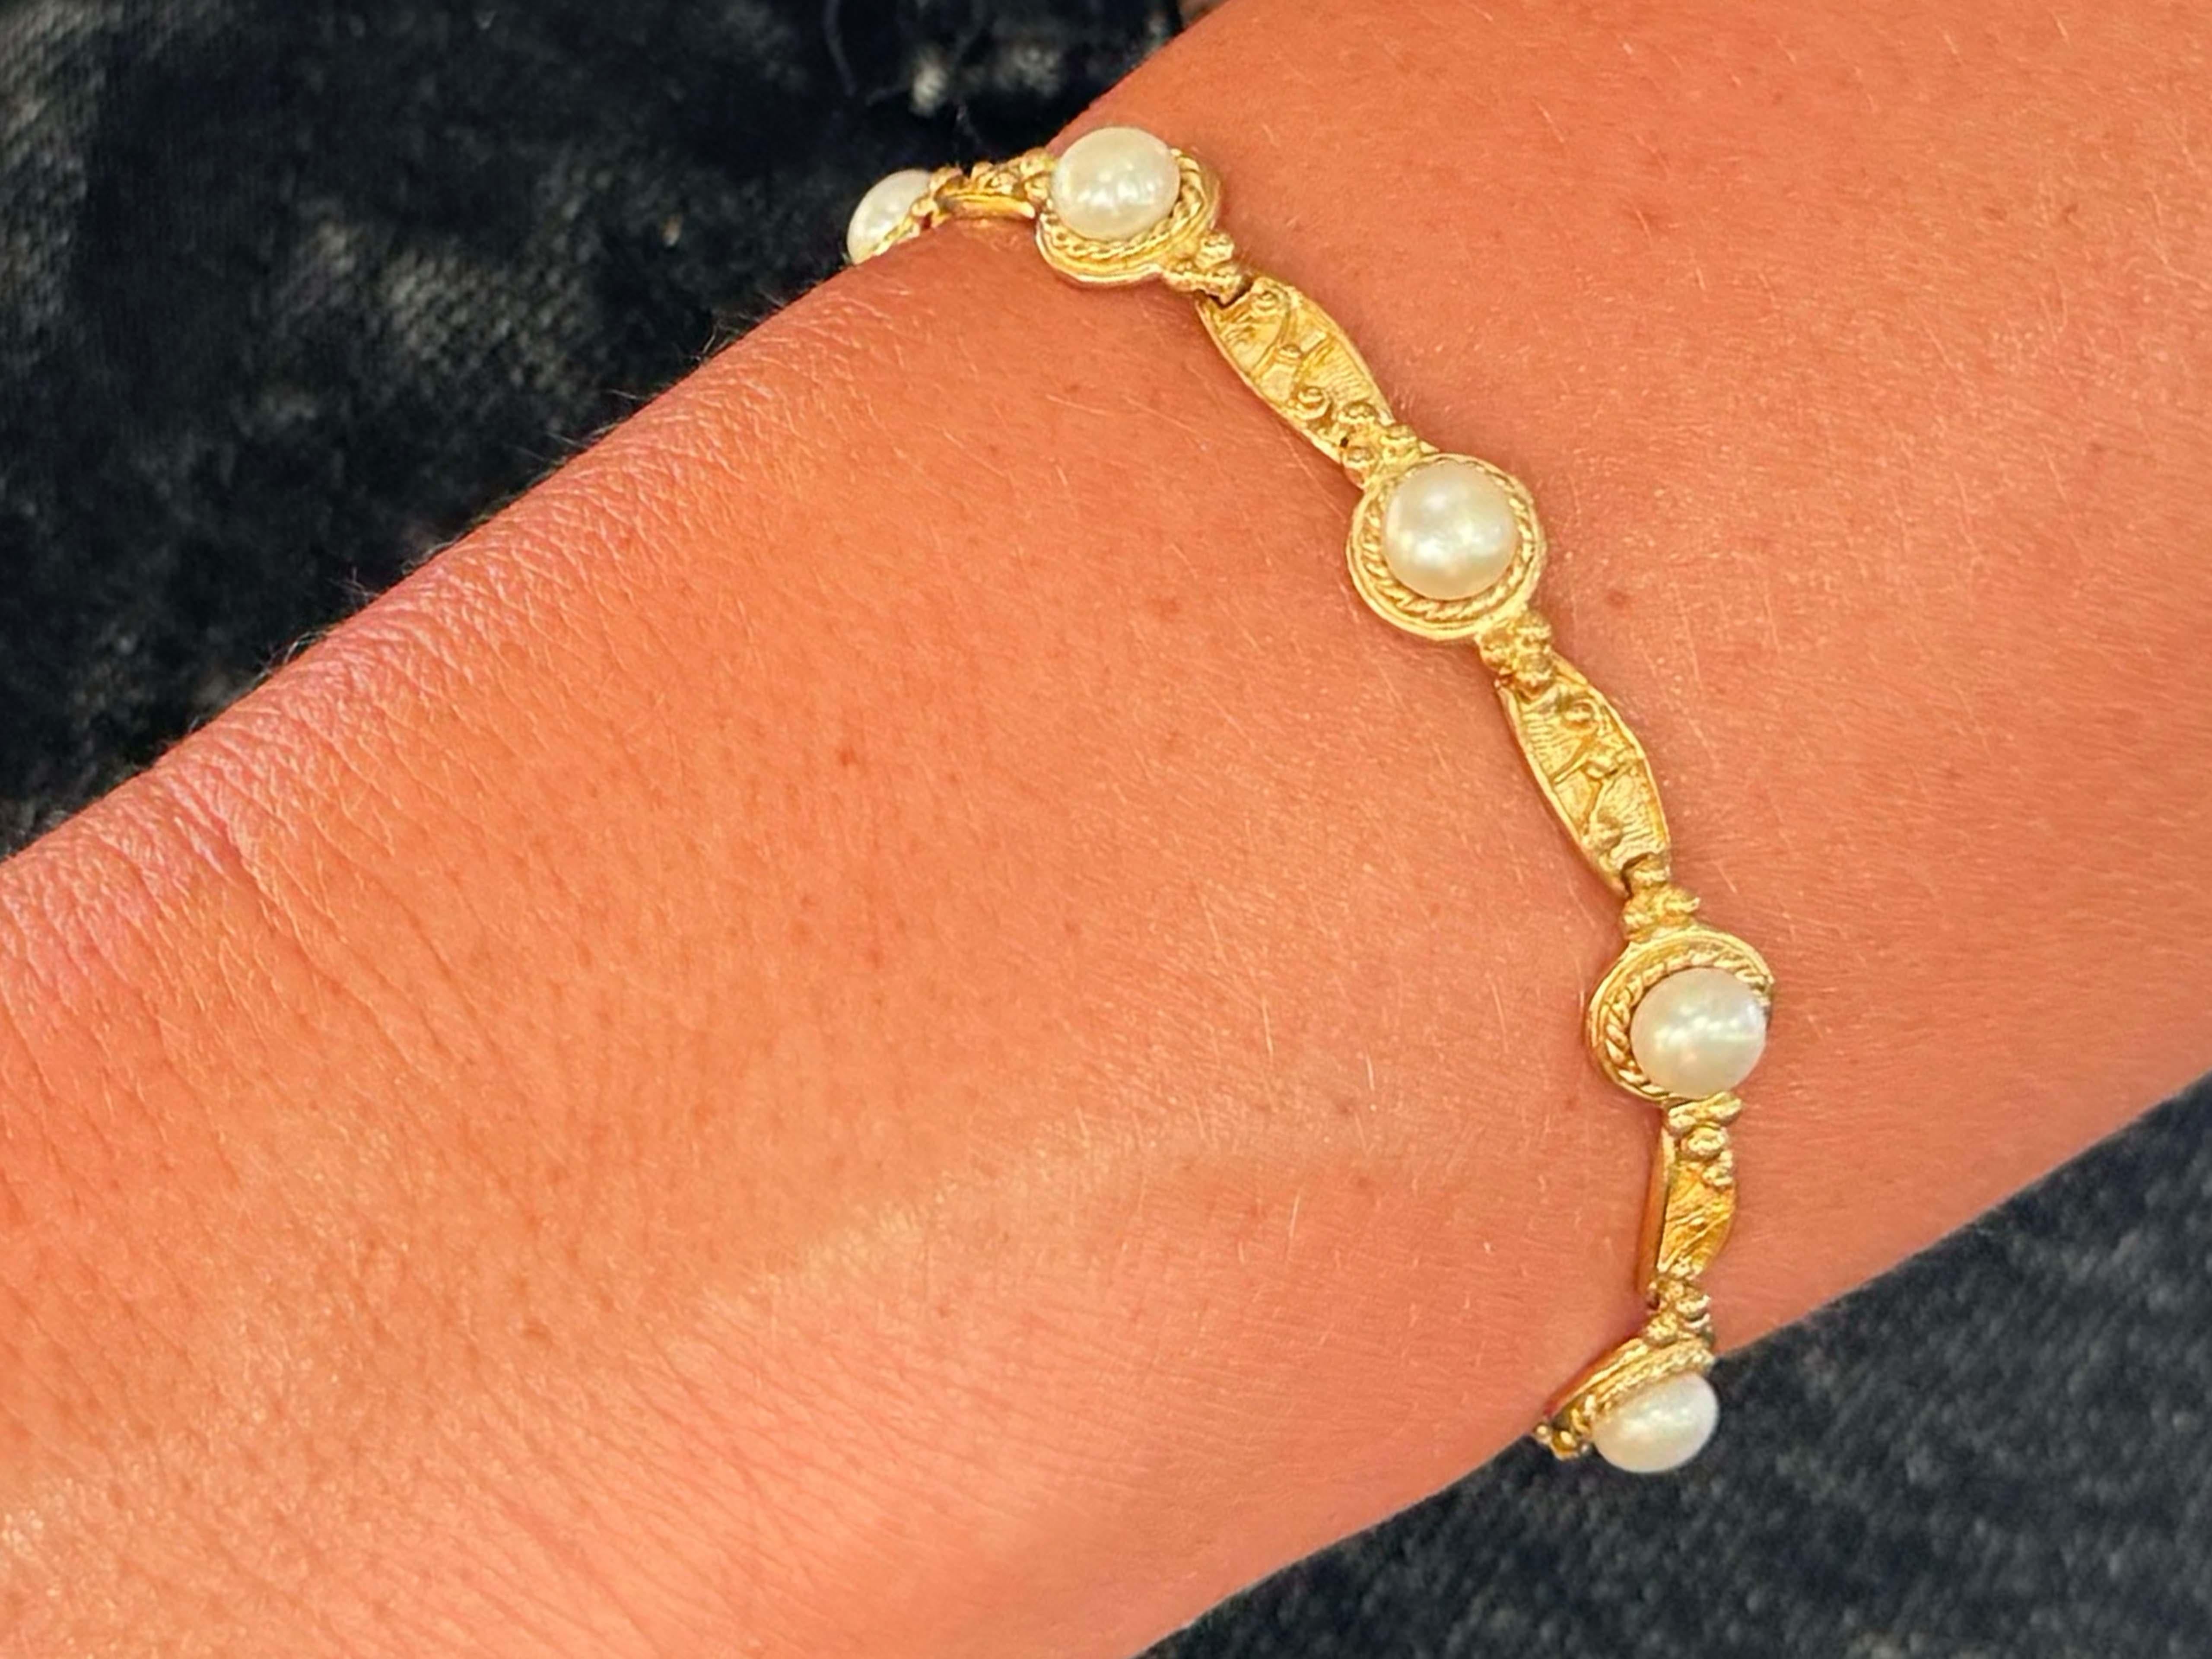 Bracelet Spécifications :

Métal : Or jaune 14k

Nombre de perles : 7 perles d'Akoya

Largeur de la perle : 5,5 mm

Longueur du bracelet : ~6.75